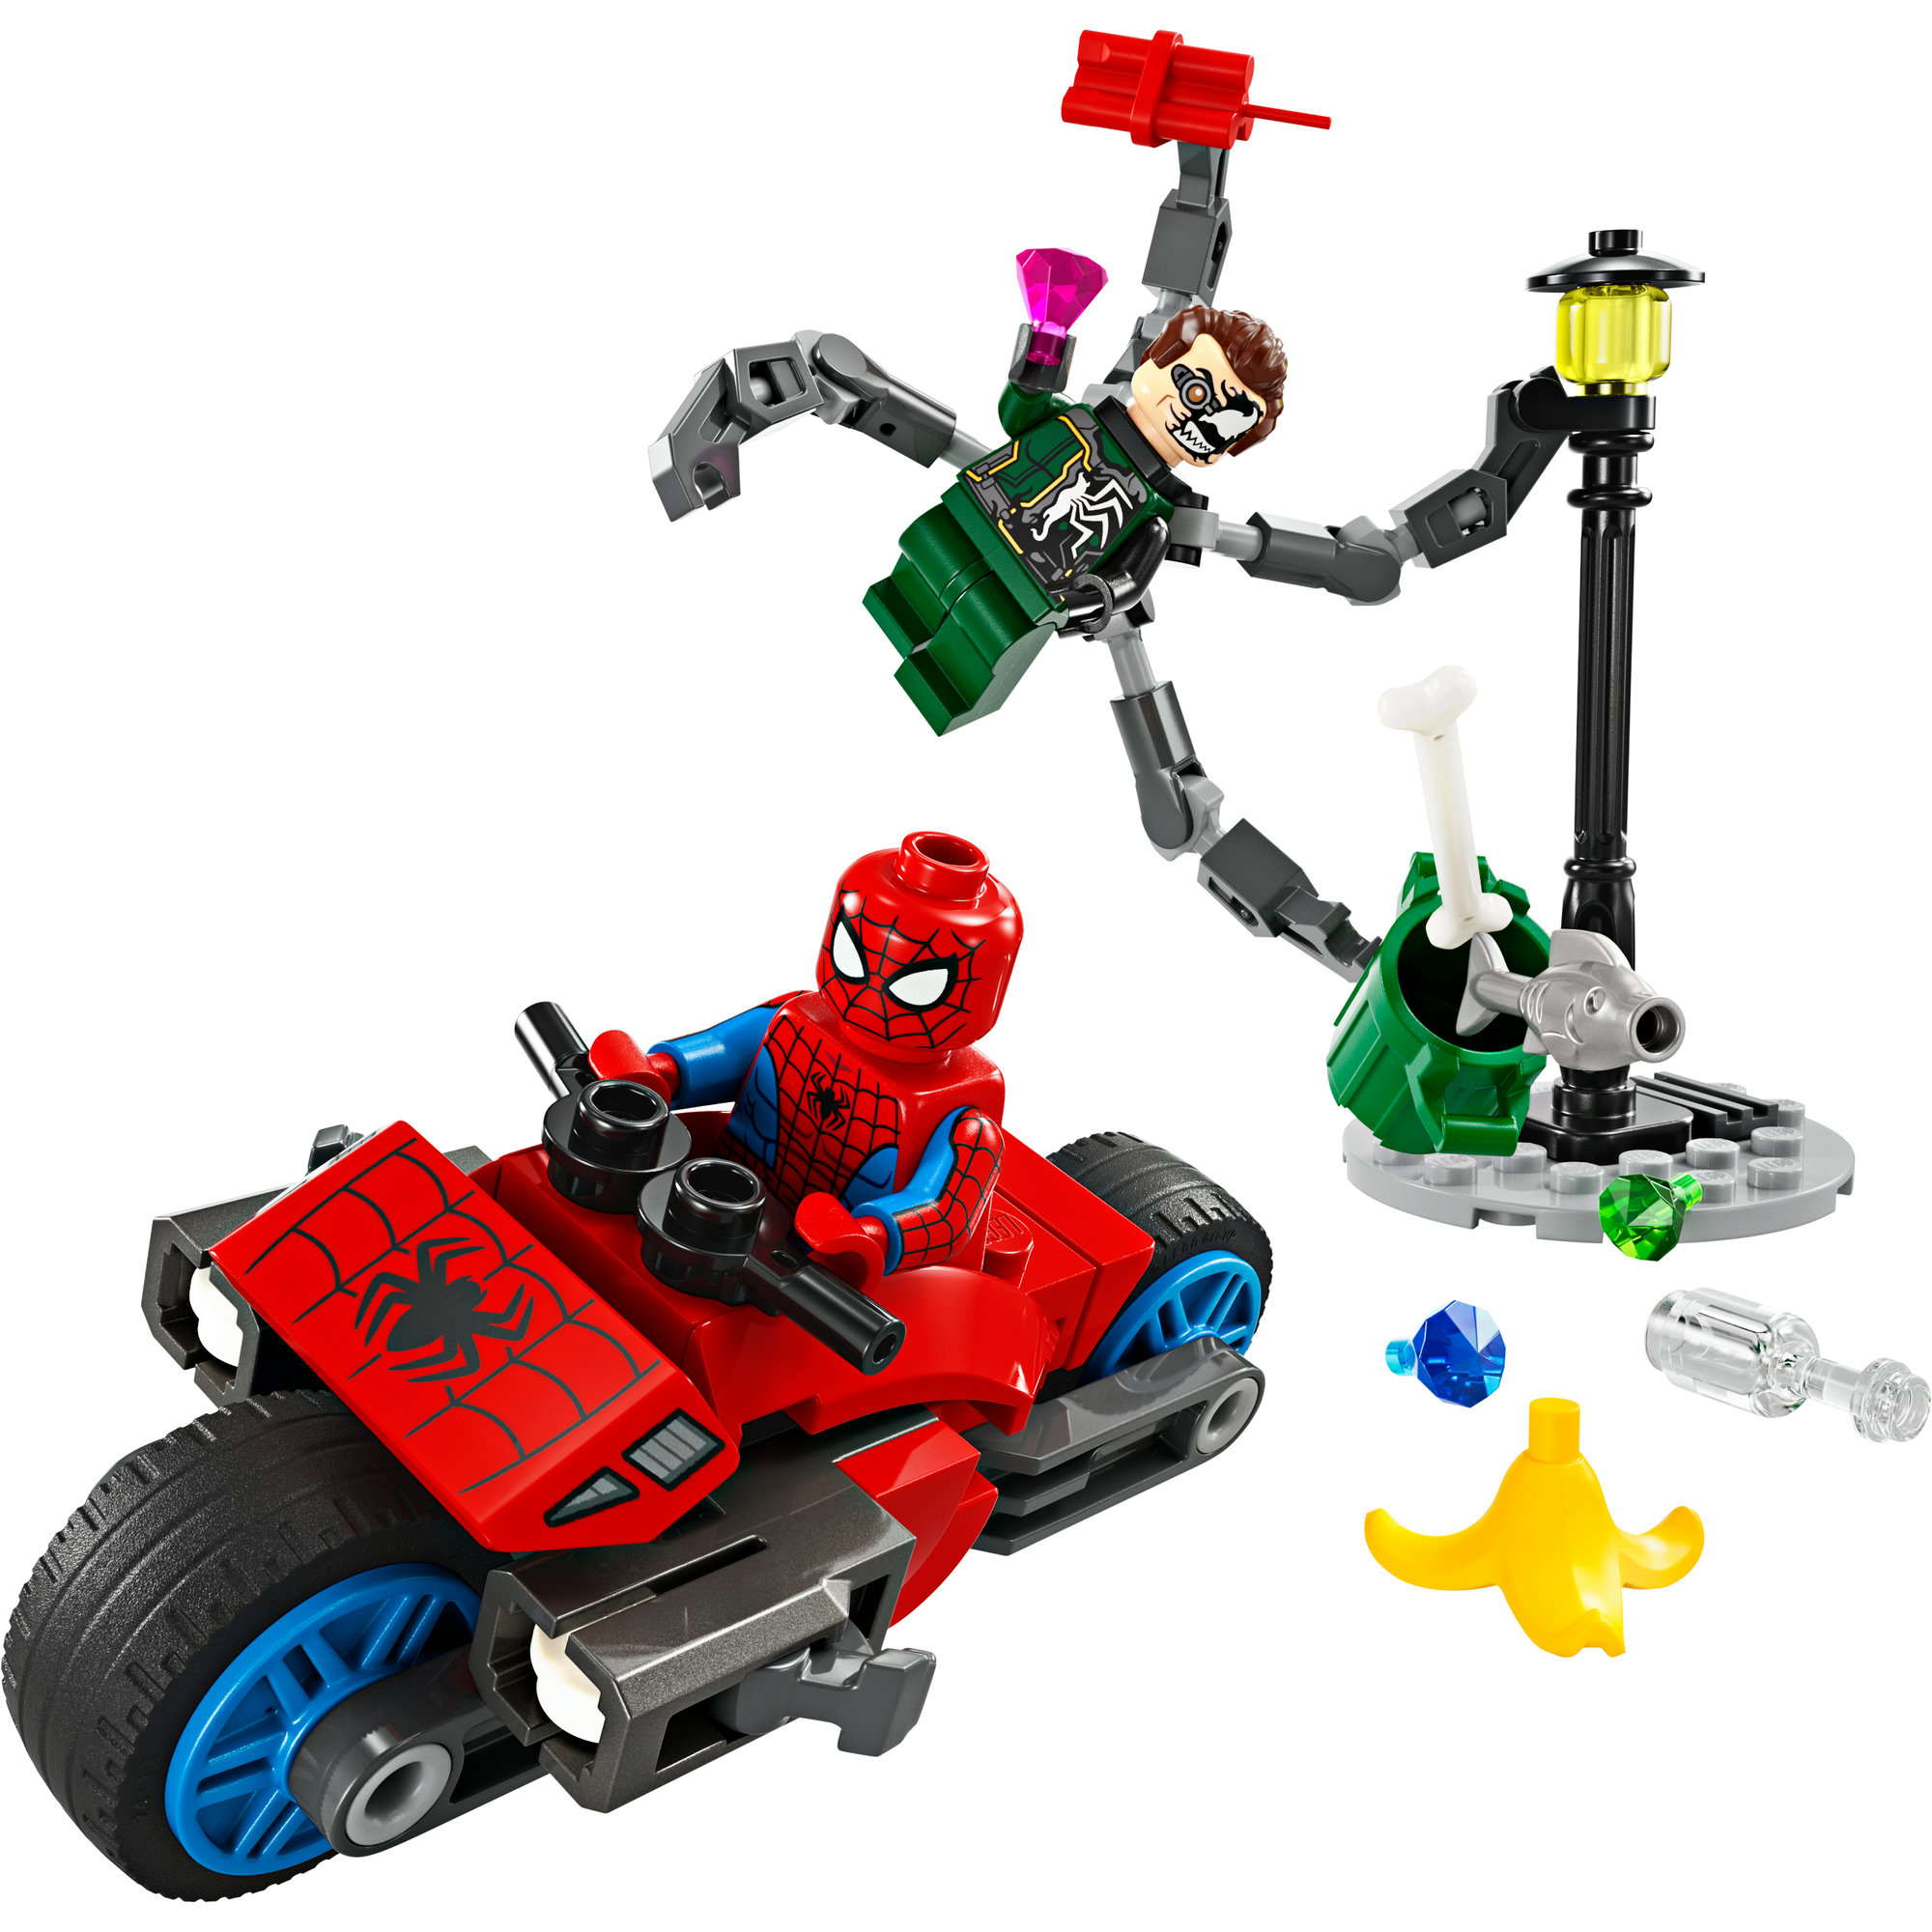 LEGO SUPERHEROES 76275 Đồ chơi lắp ráp Người nhện đối đầu tiến sĩ Ock (77 chi tiết)